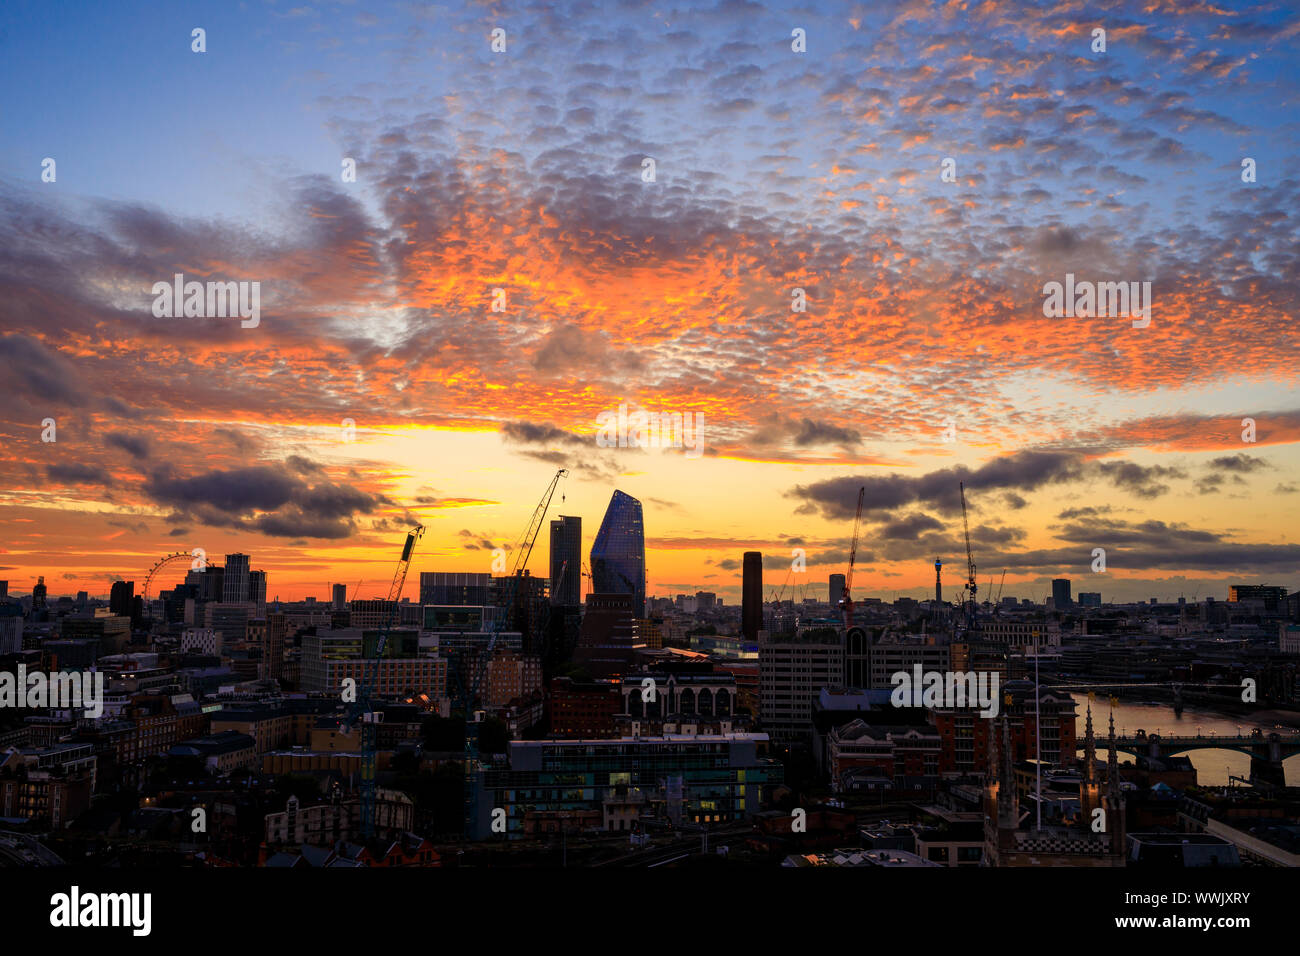 Vedute del tramonto mozzafiato oltre l'orizzonte di Londra la scorsa notte presi da London Bridge. Meteo misti in previsione per il fine settimana. Foto Stock